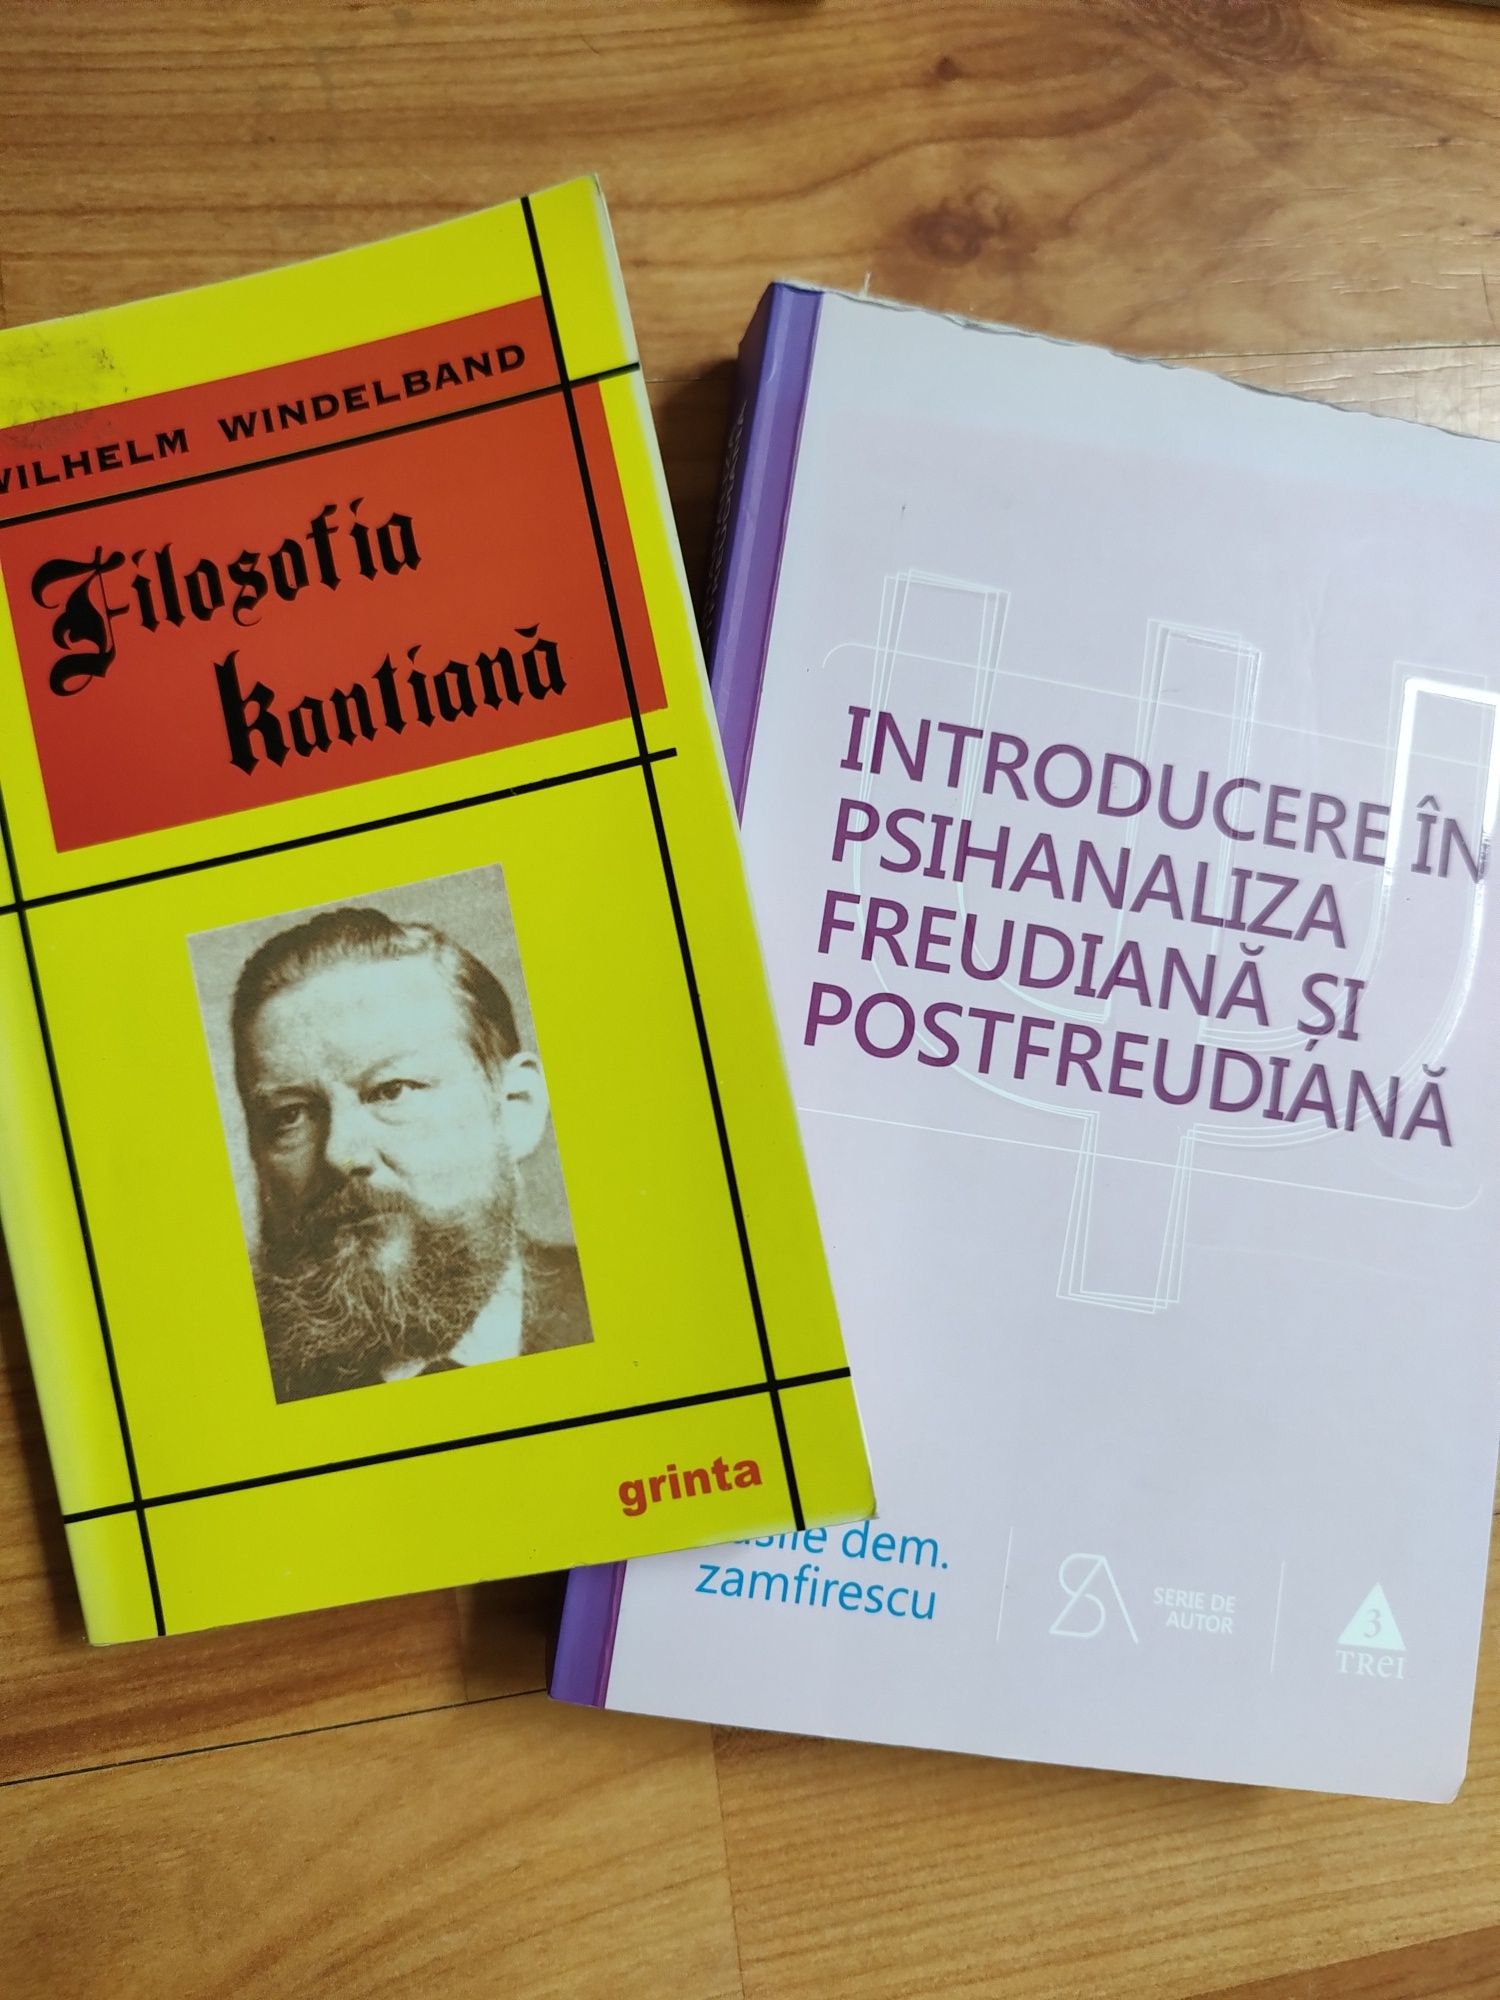 ,,Introducere în Psihanaliza Freudiană..."+Filosofia Kantiană